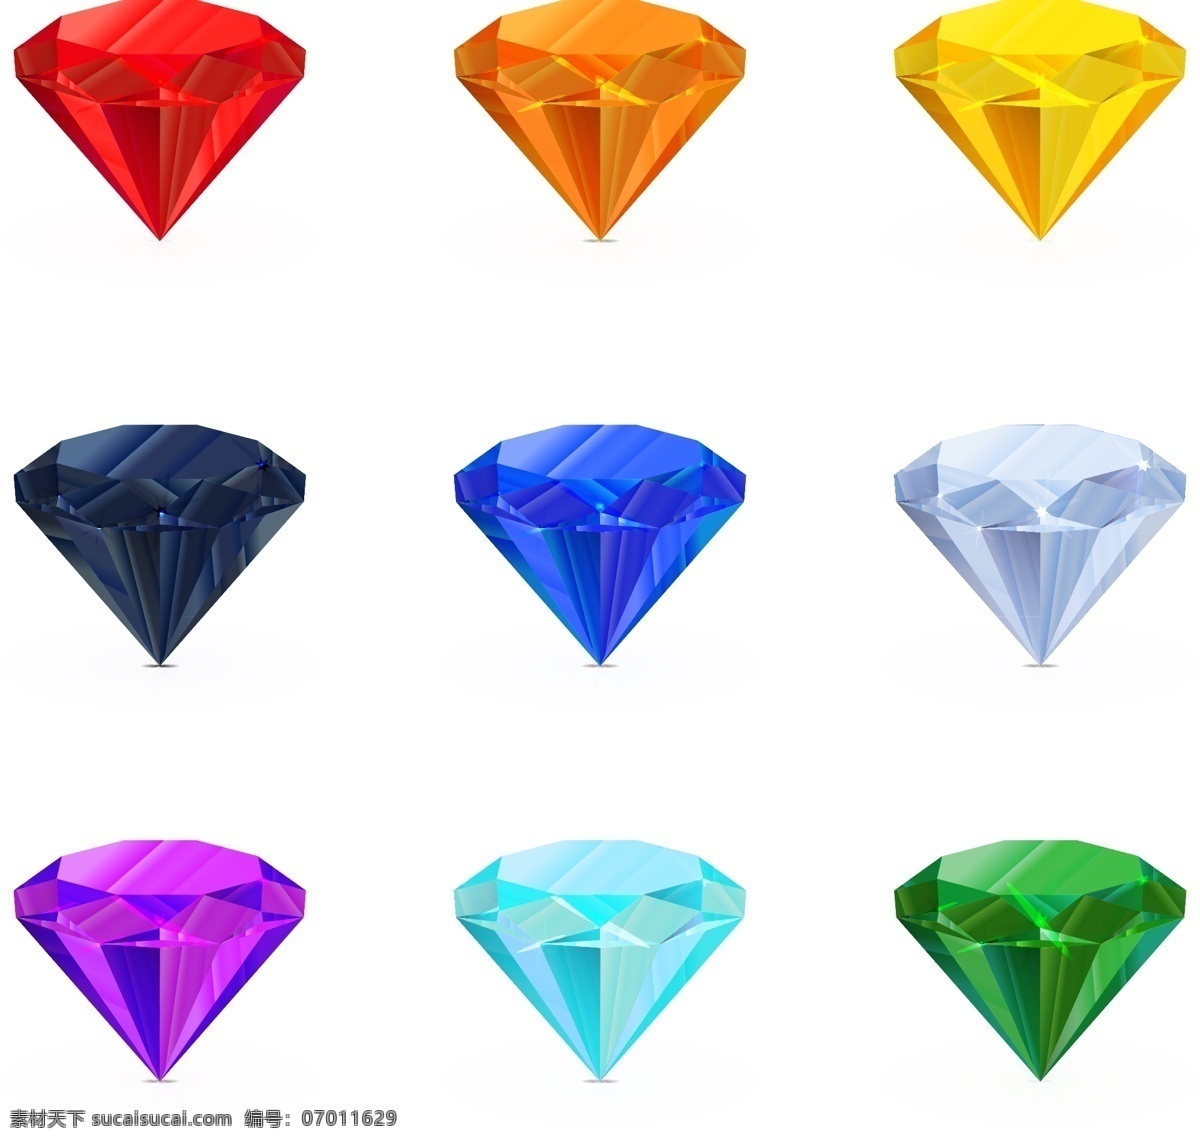 彩色钻石 钻石宝石 钻石 宝石 亮晶晶 闪耀 光彩夺目 晶莹剔透 天然矿石 珍贵 稀有 饰品